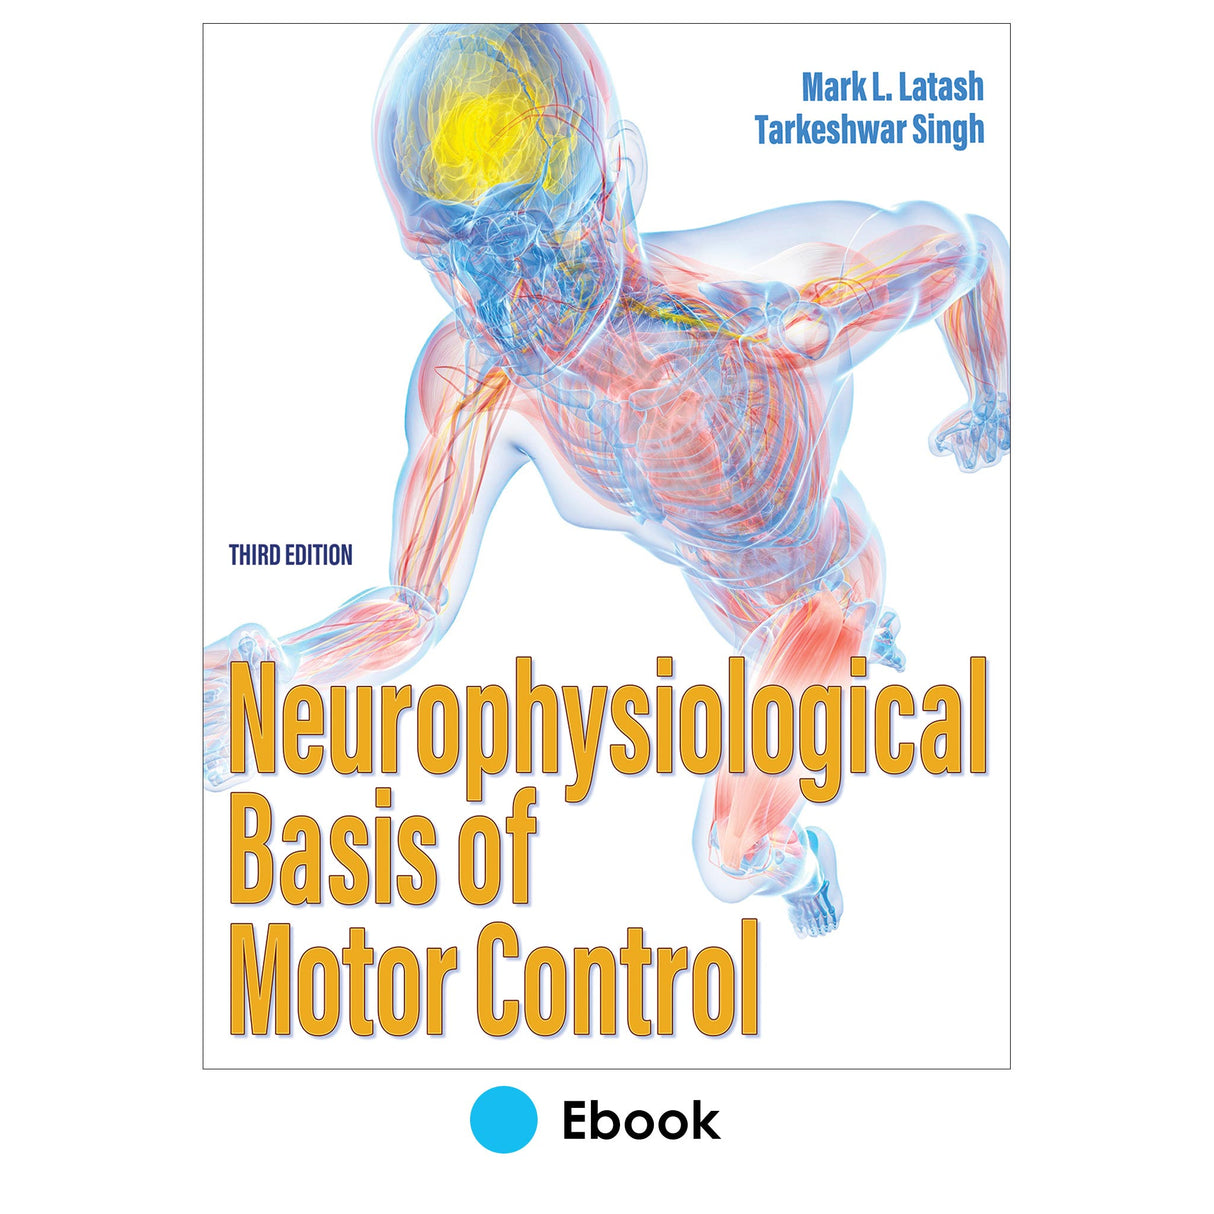 Neurophysiological Basis of Motor Control 3rd Edition epub